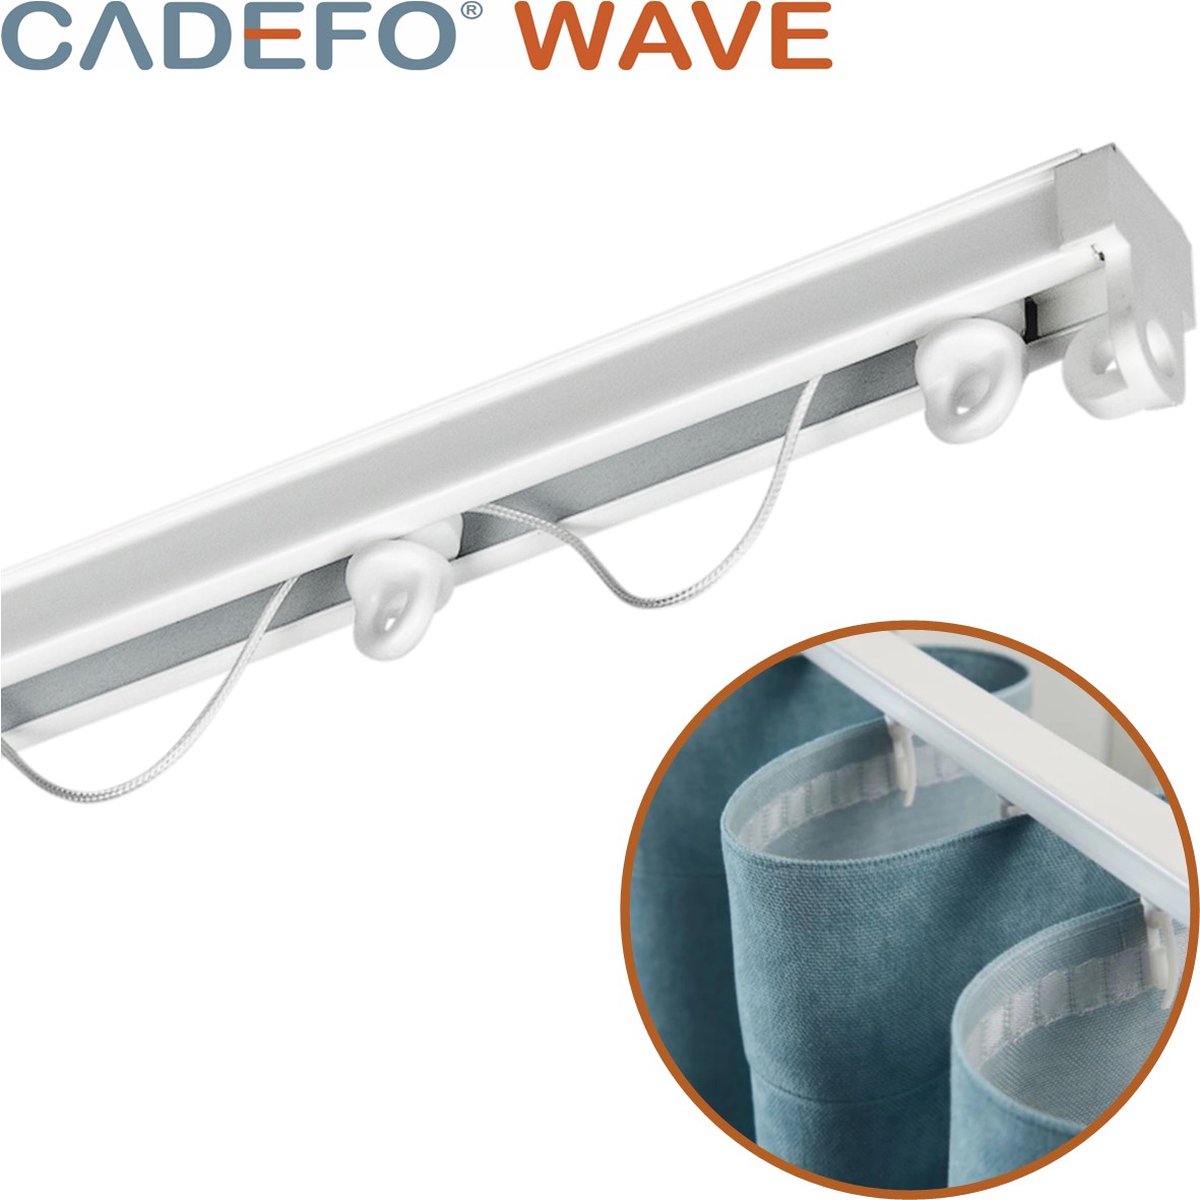 CADEFO WAVE (251 - 300 cm) Gordijnrails - Compleet op maat! - UIT 1 STUK - Leverbaar tot 6 meter - Plafondbevestiging - Lengte 297 cm